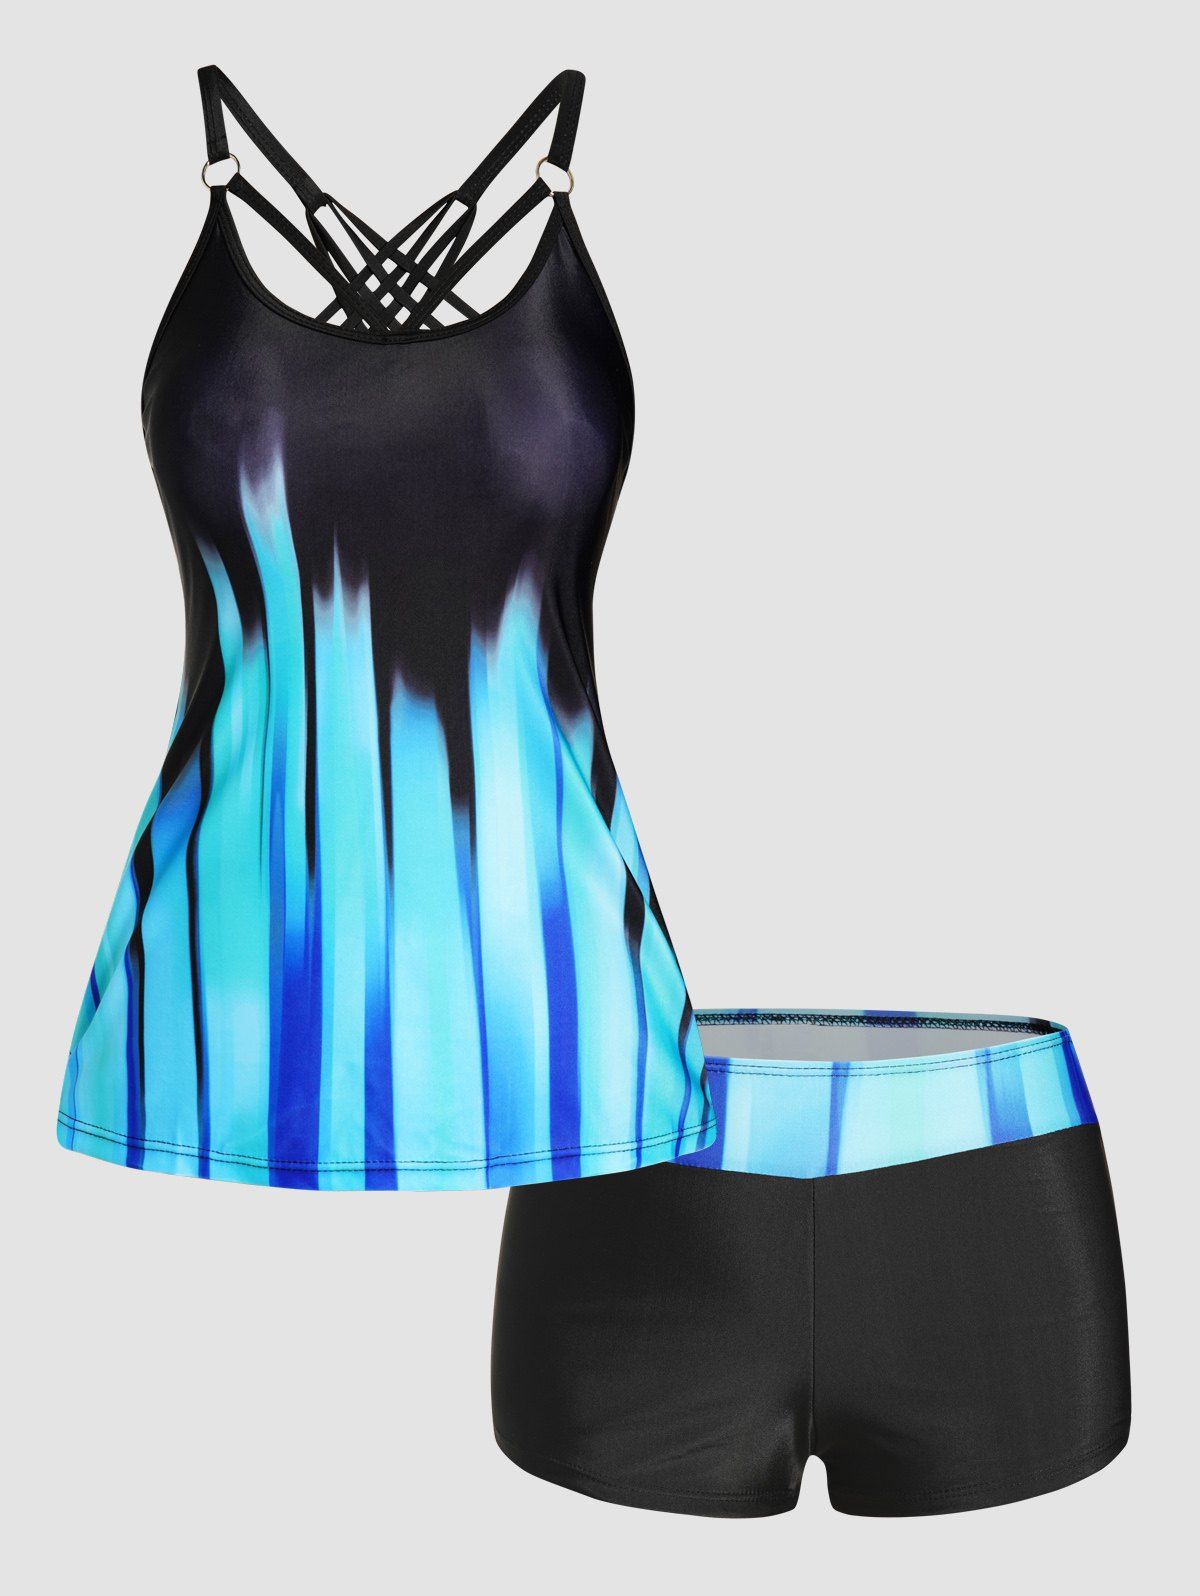 Ombre Stripe Print Tankini Swimsuit Crisscross Padded Tankini Two Piece Swimwear Boyleg Bathing Suit - BLUE 2XL